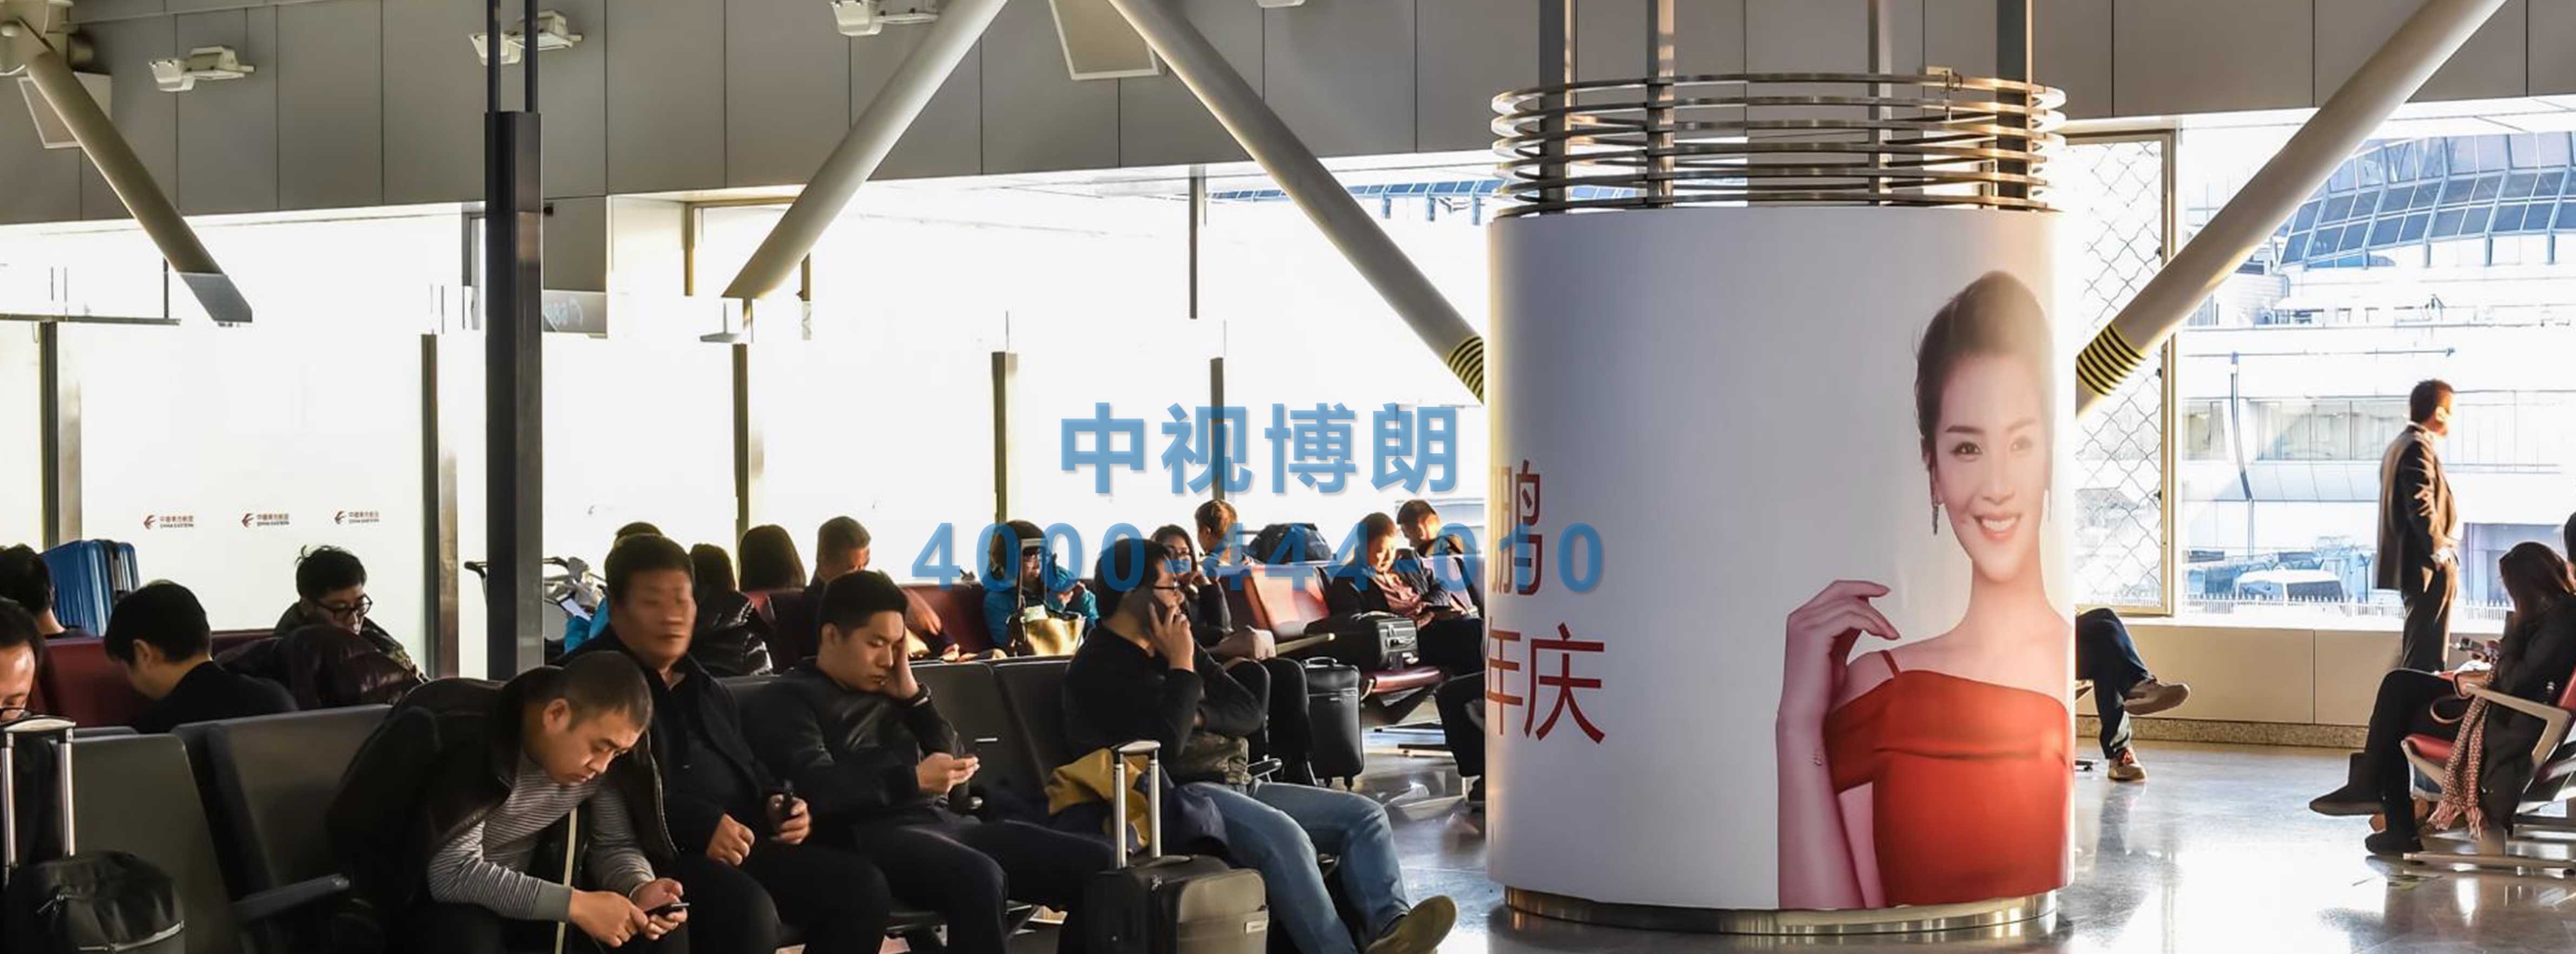 北京首都机场广告-T2国内出发候机区包柱贴膜套装